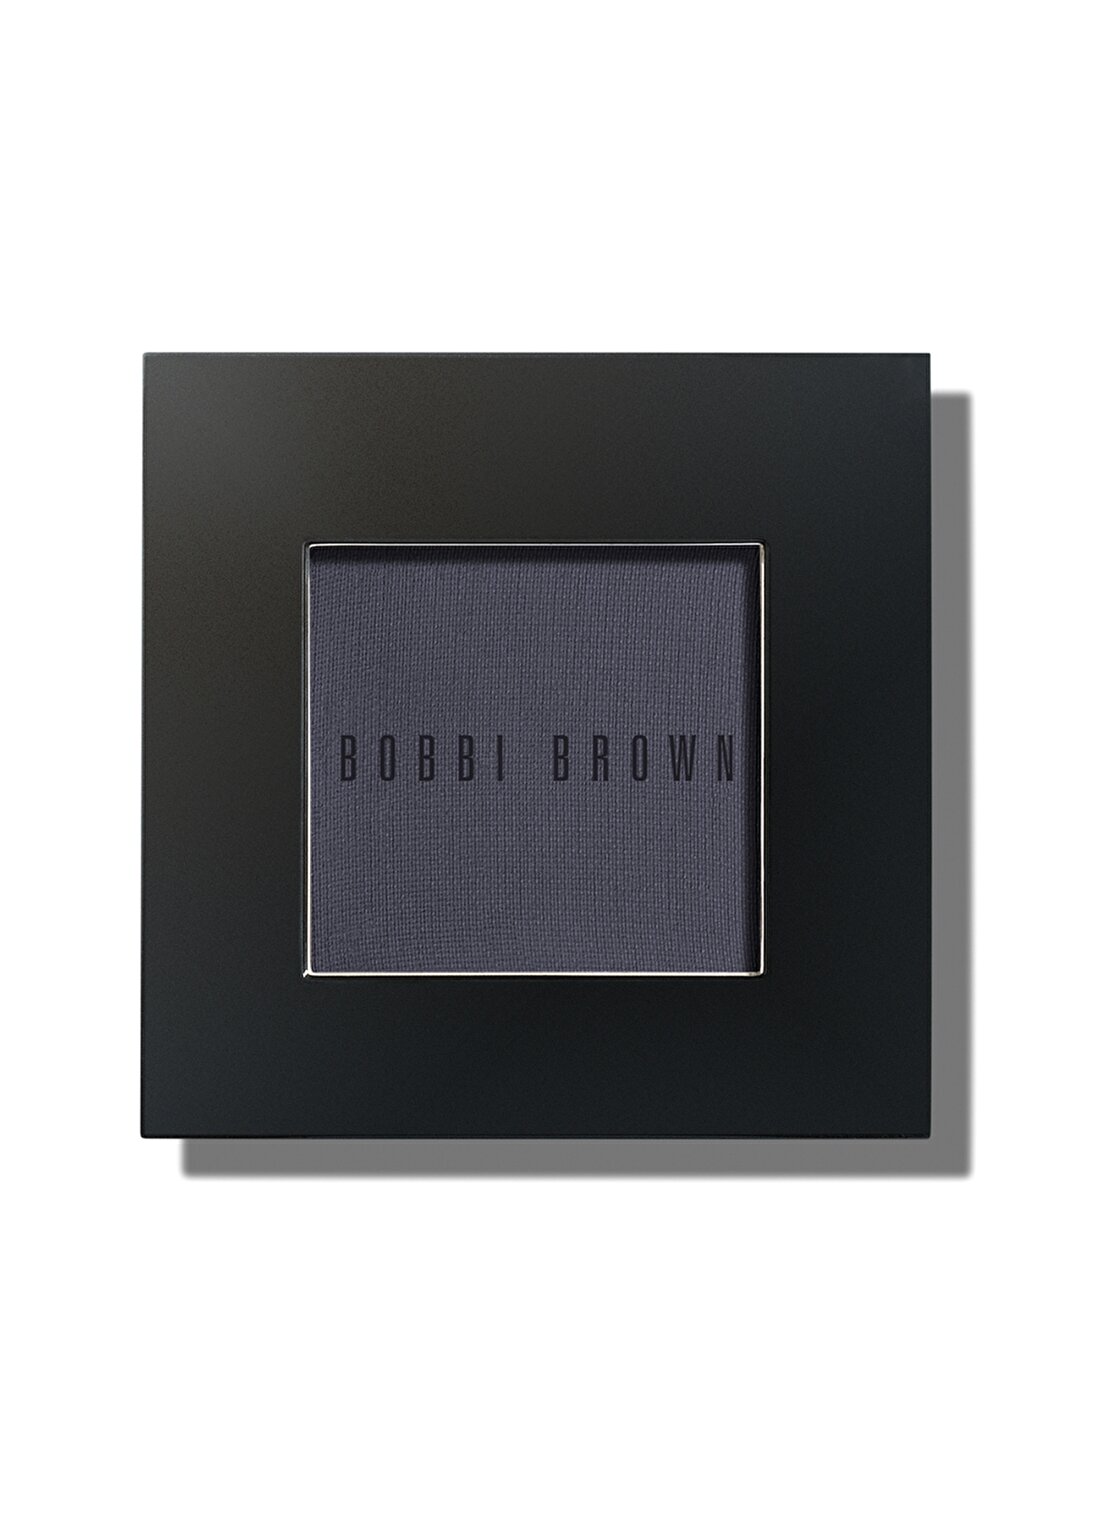 Bobbi Brown Eye Shadow- Rich Navy Göz Farı